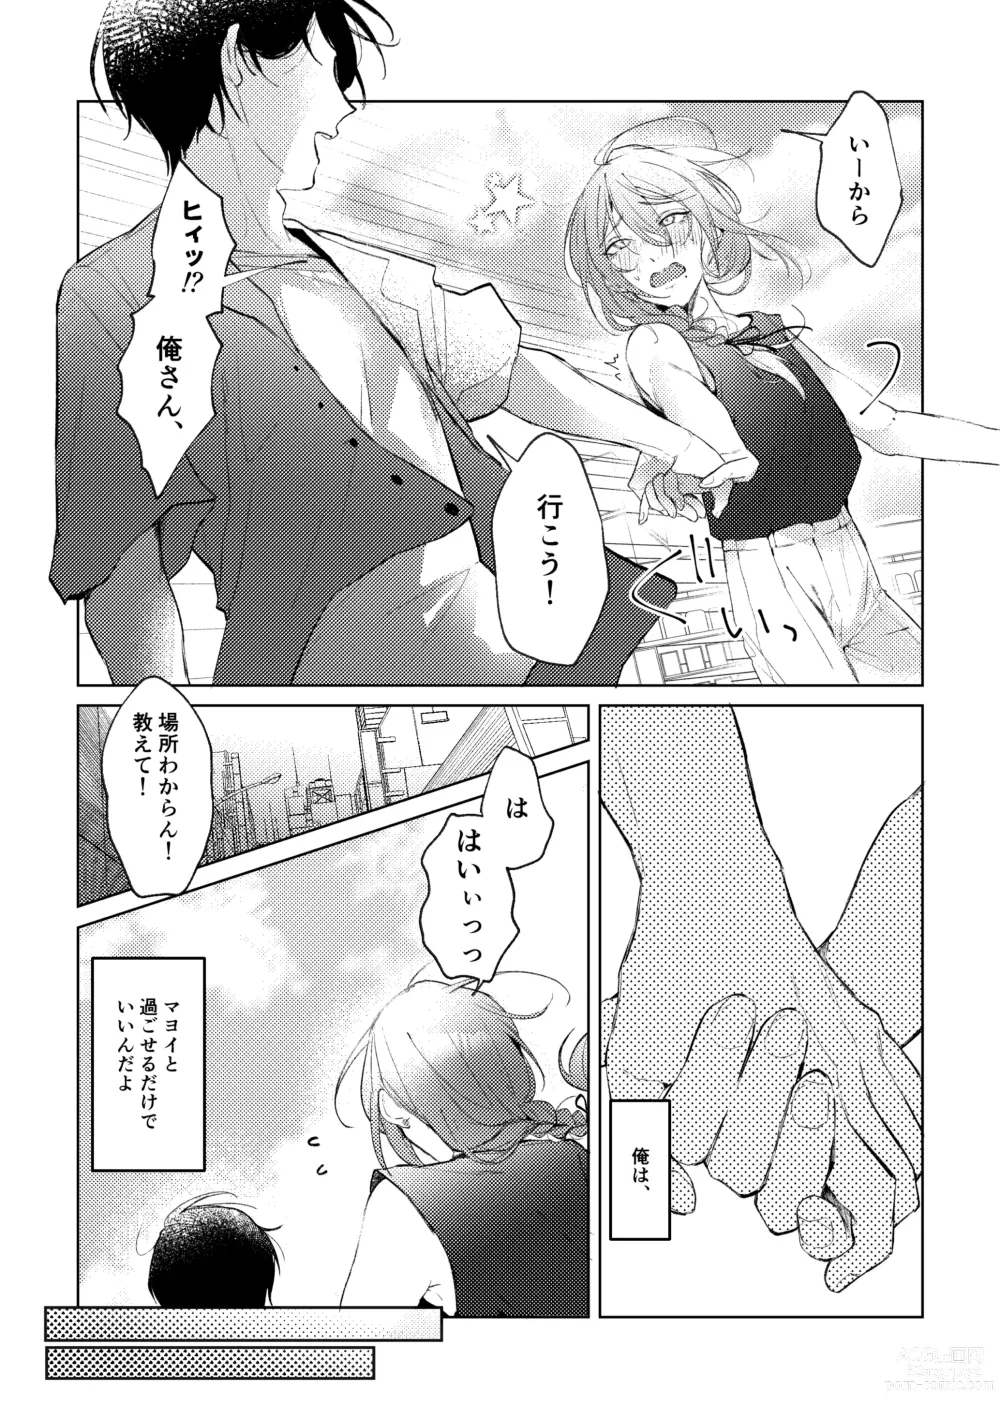 Page 9 of doujinshi Ore no Kanojo no Mayoi-kun.